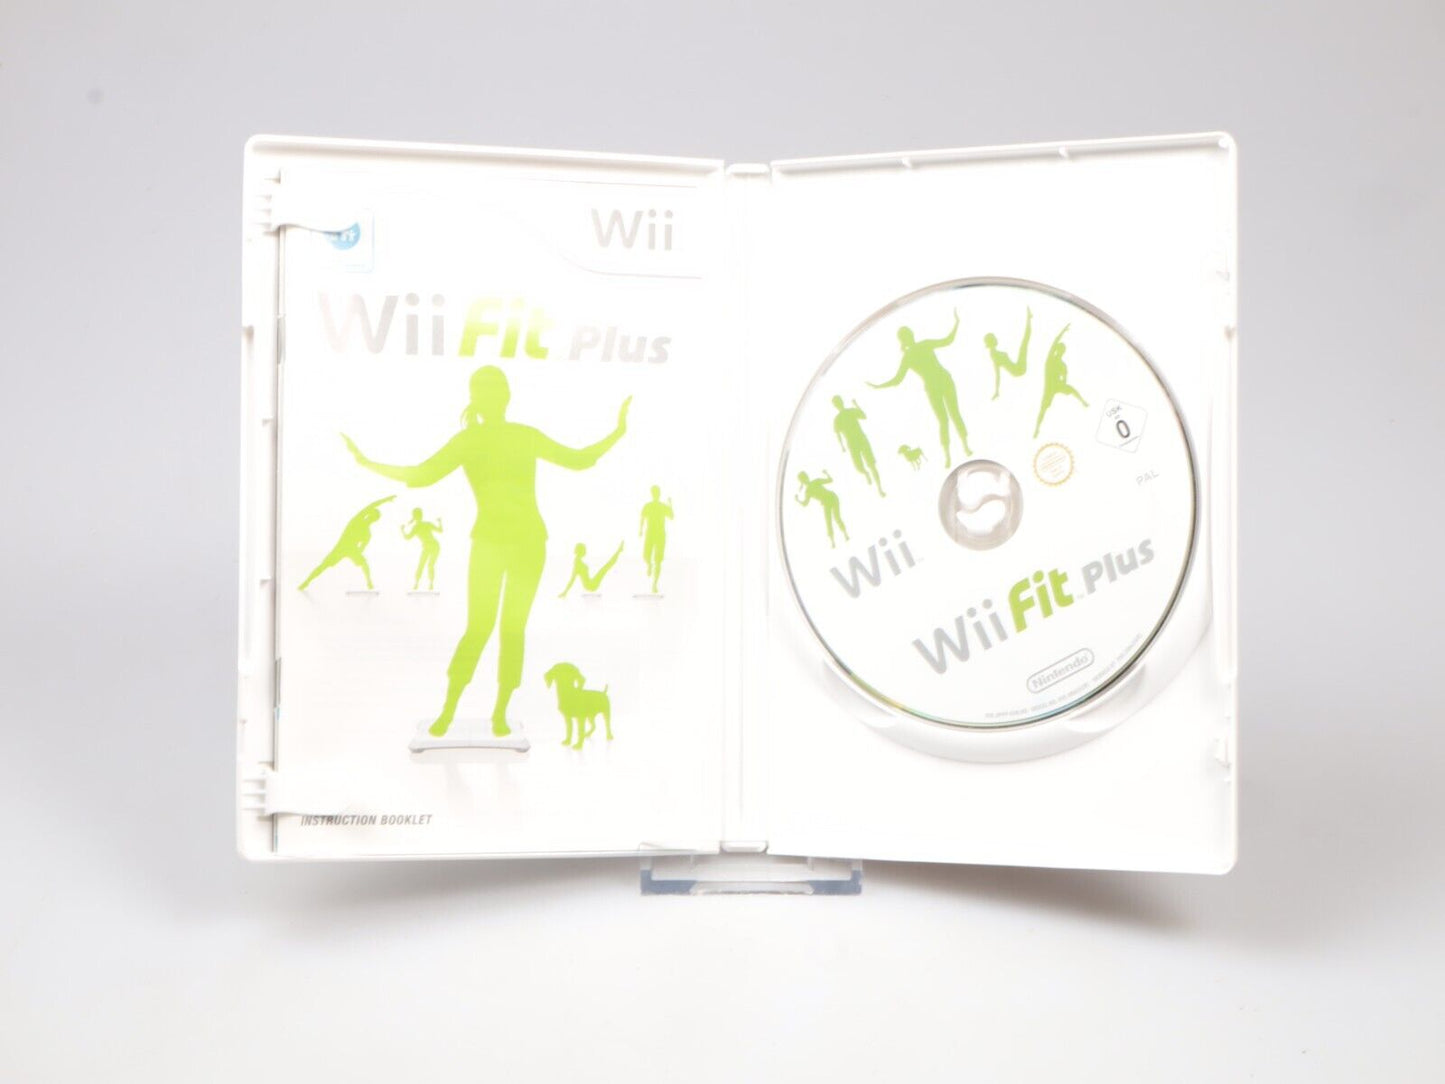 Wii Balance Board Zwart | In doos RVL-021 | + Wii Fit-spel 